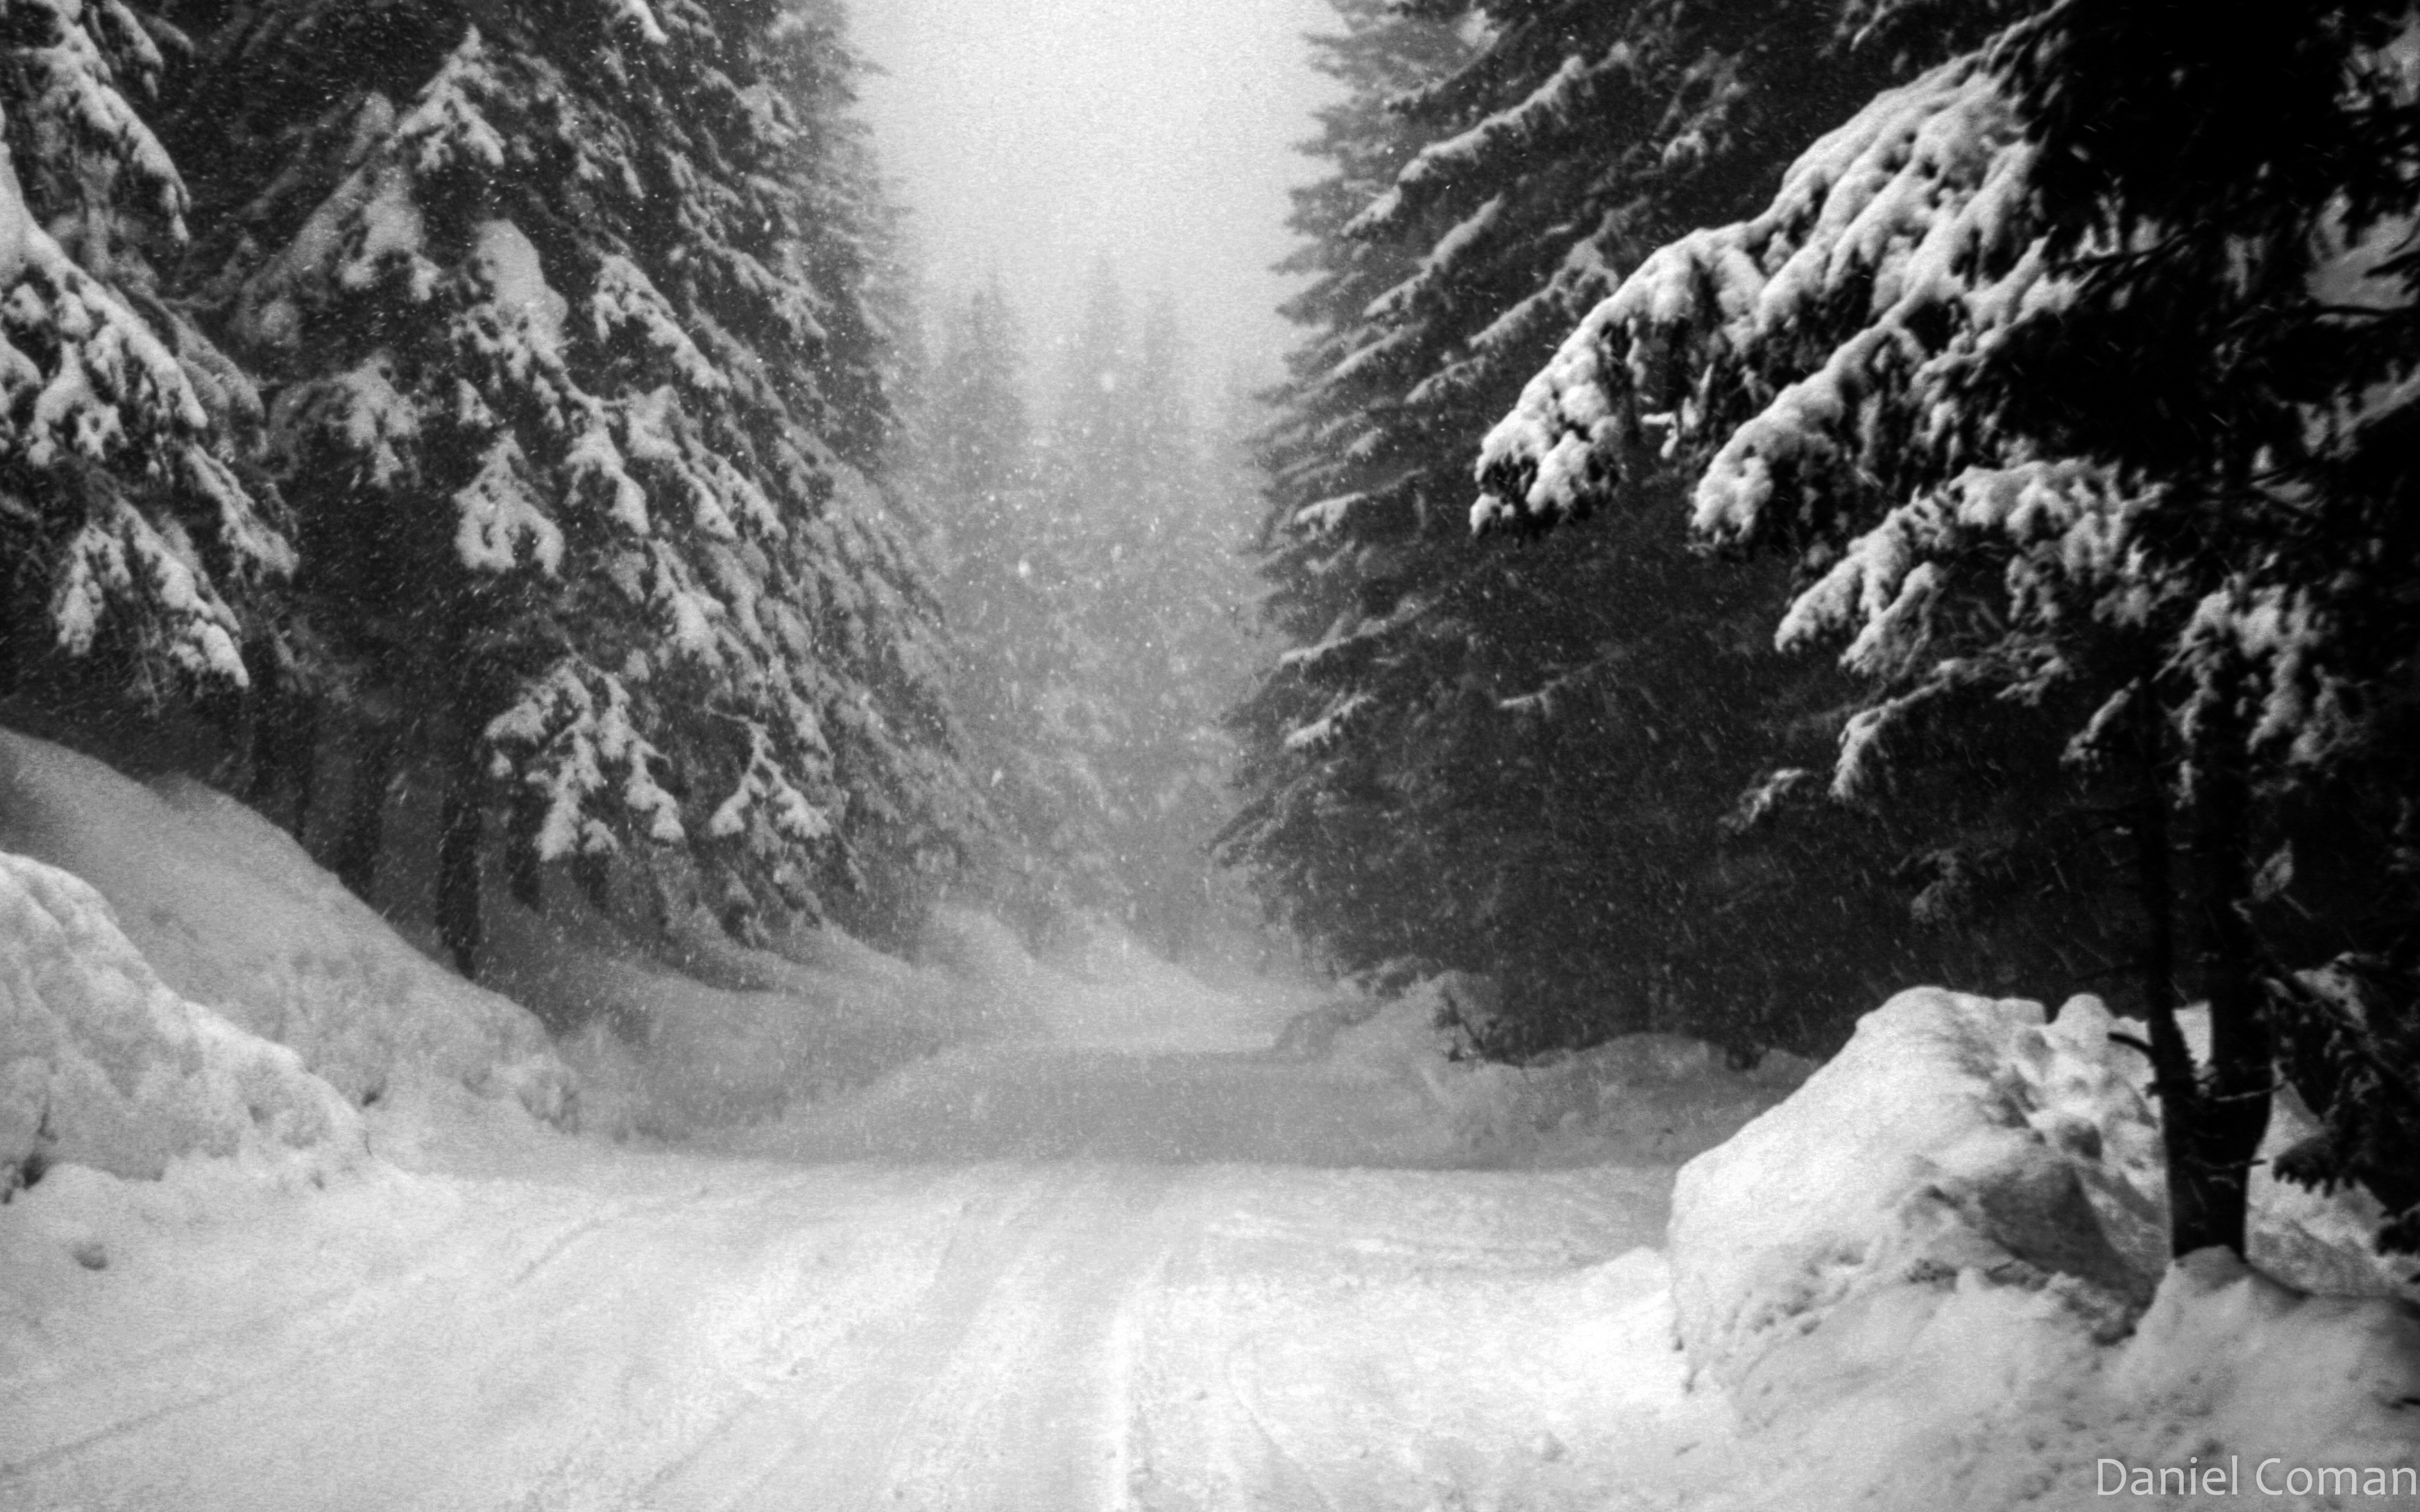 Tukuma apkārtnē ceļi apledo un vietām sniegots; brauktuves tīra un kaisa